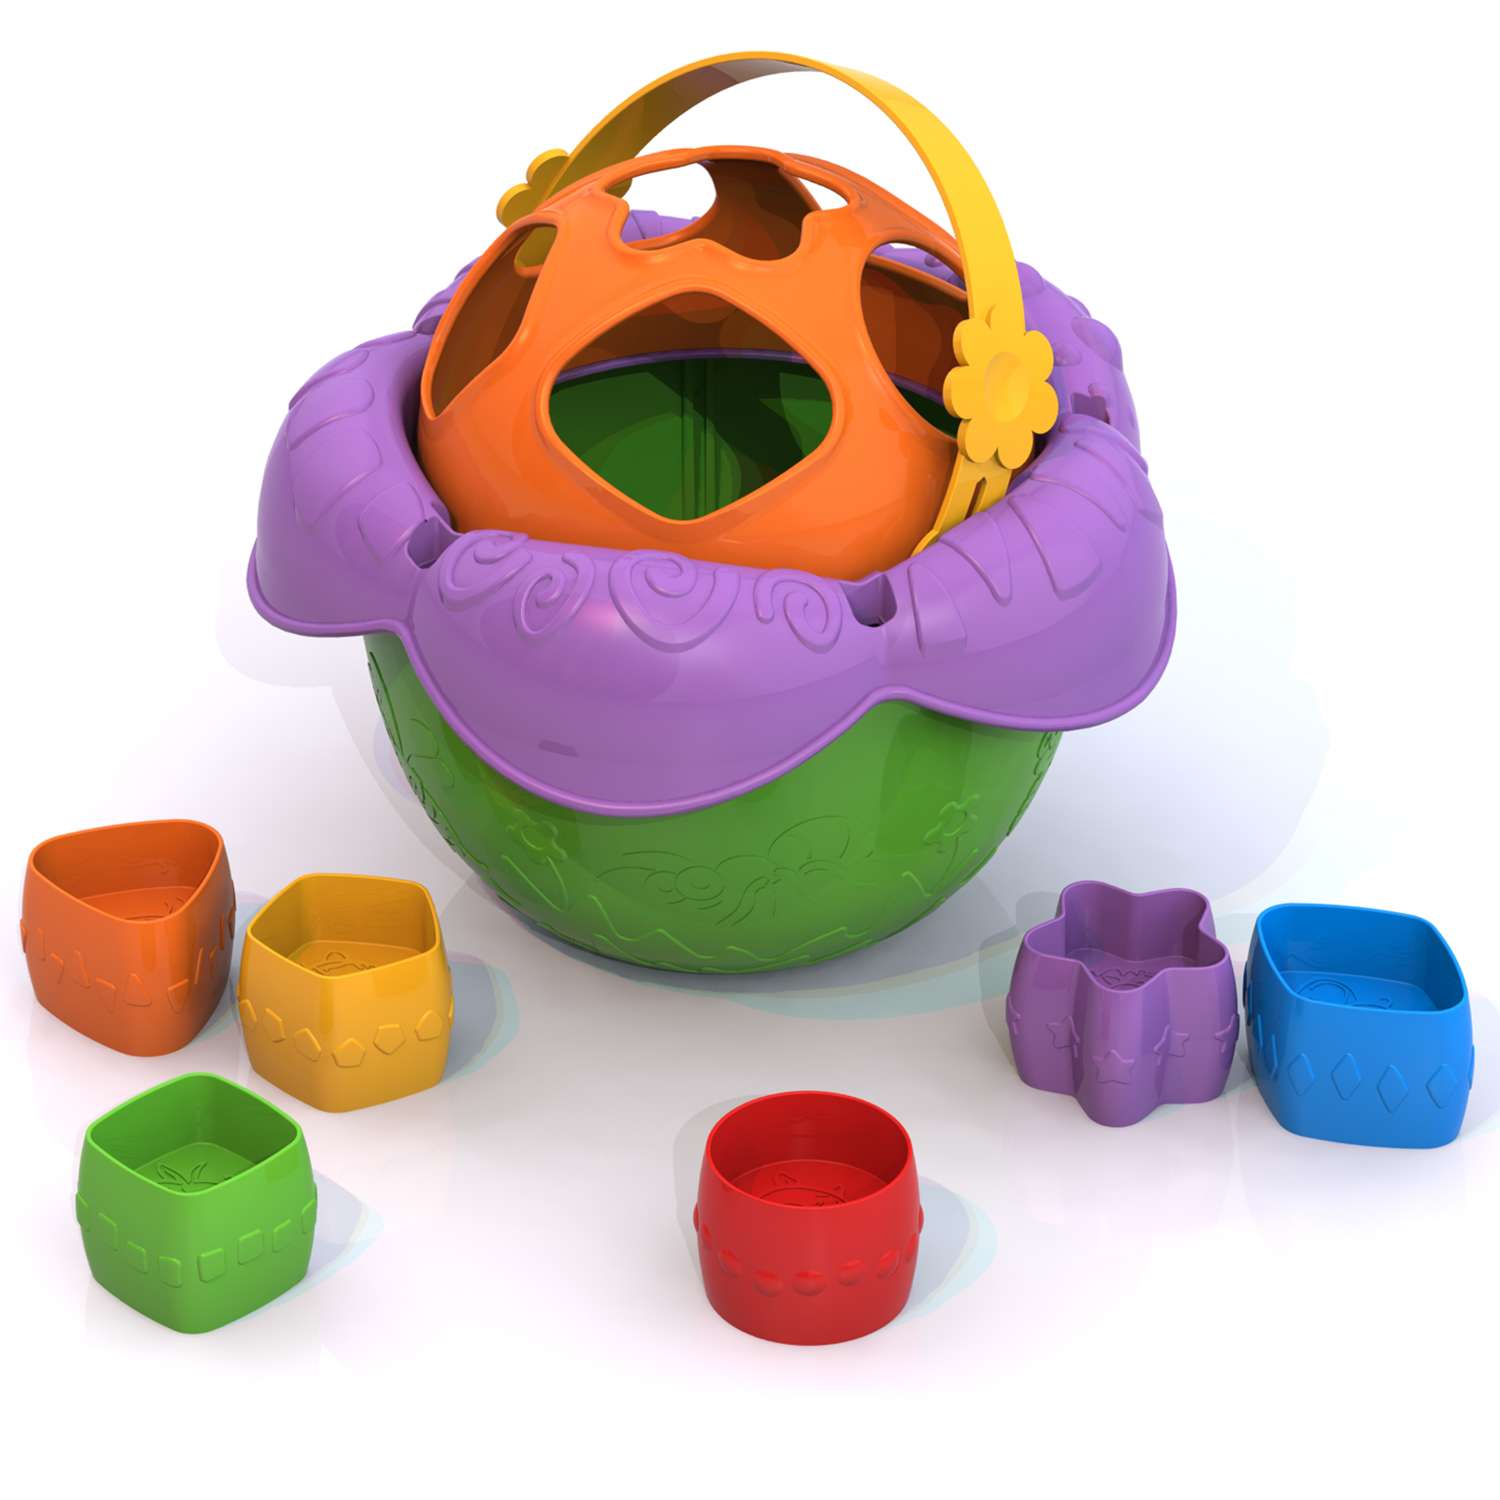 Дидактическая игрушка Нордпласт Ведро Цветочек в ассортименте - фото 2